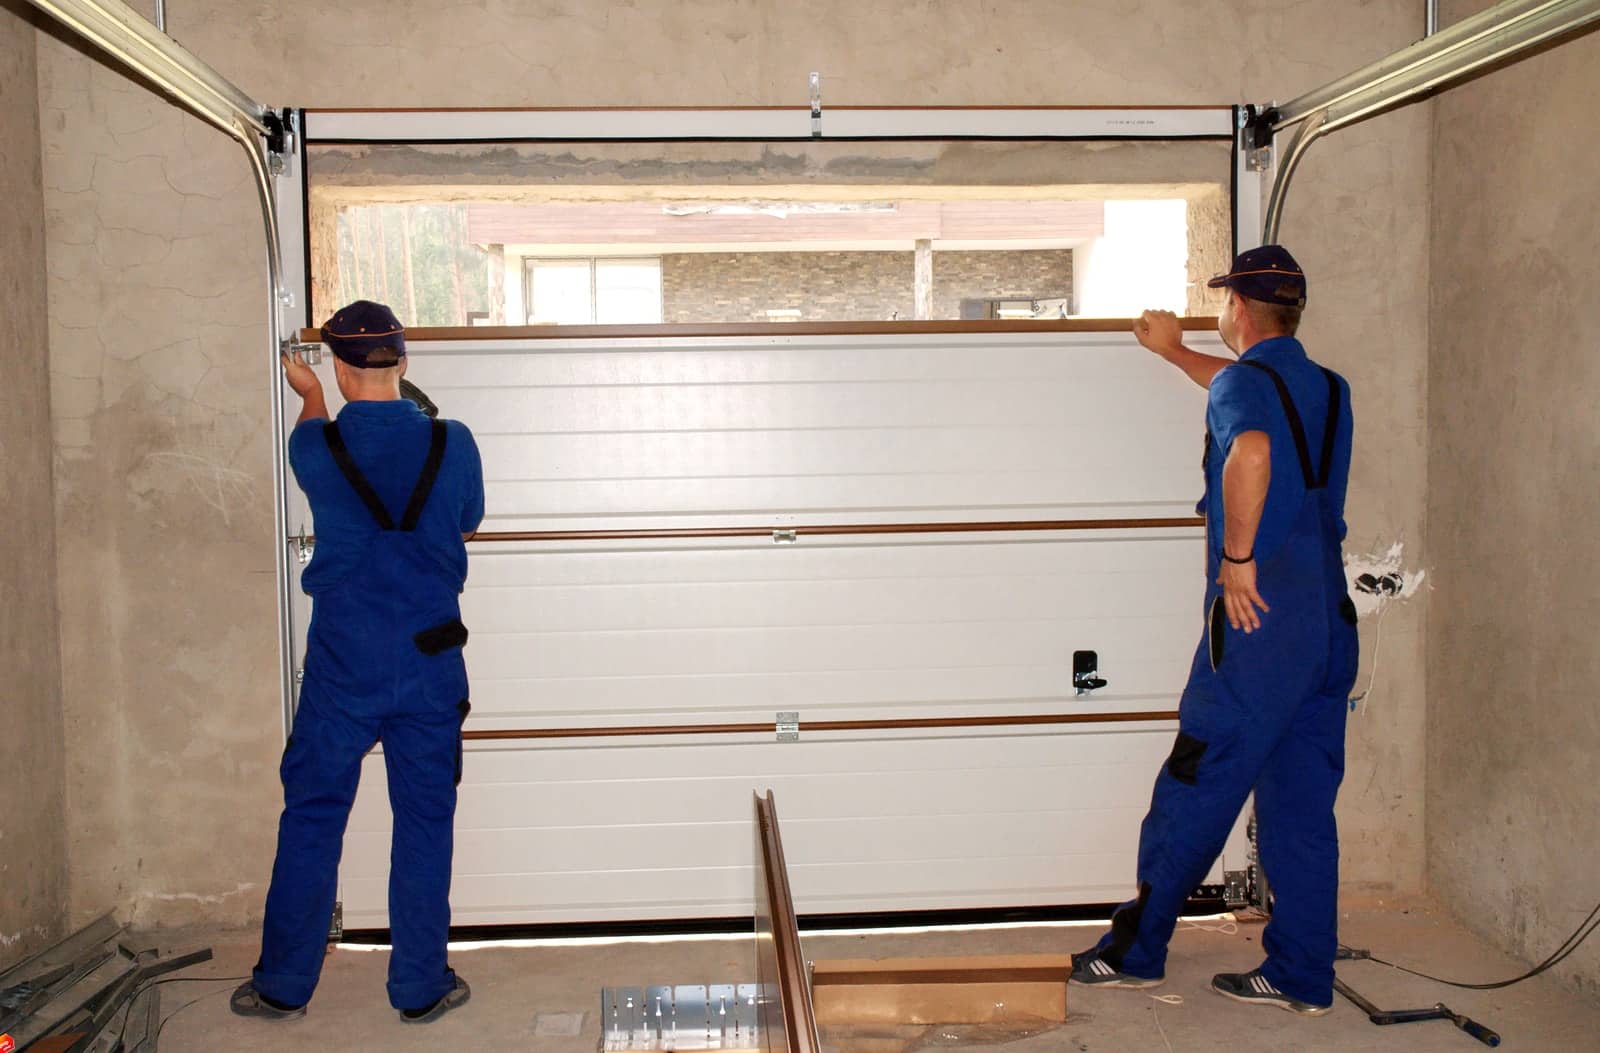 Garage Door Repair Typically Cost, Garage Door Annual Maintenance Cost